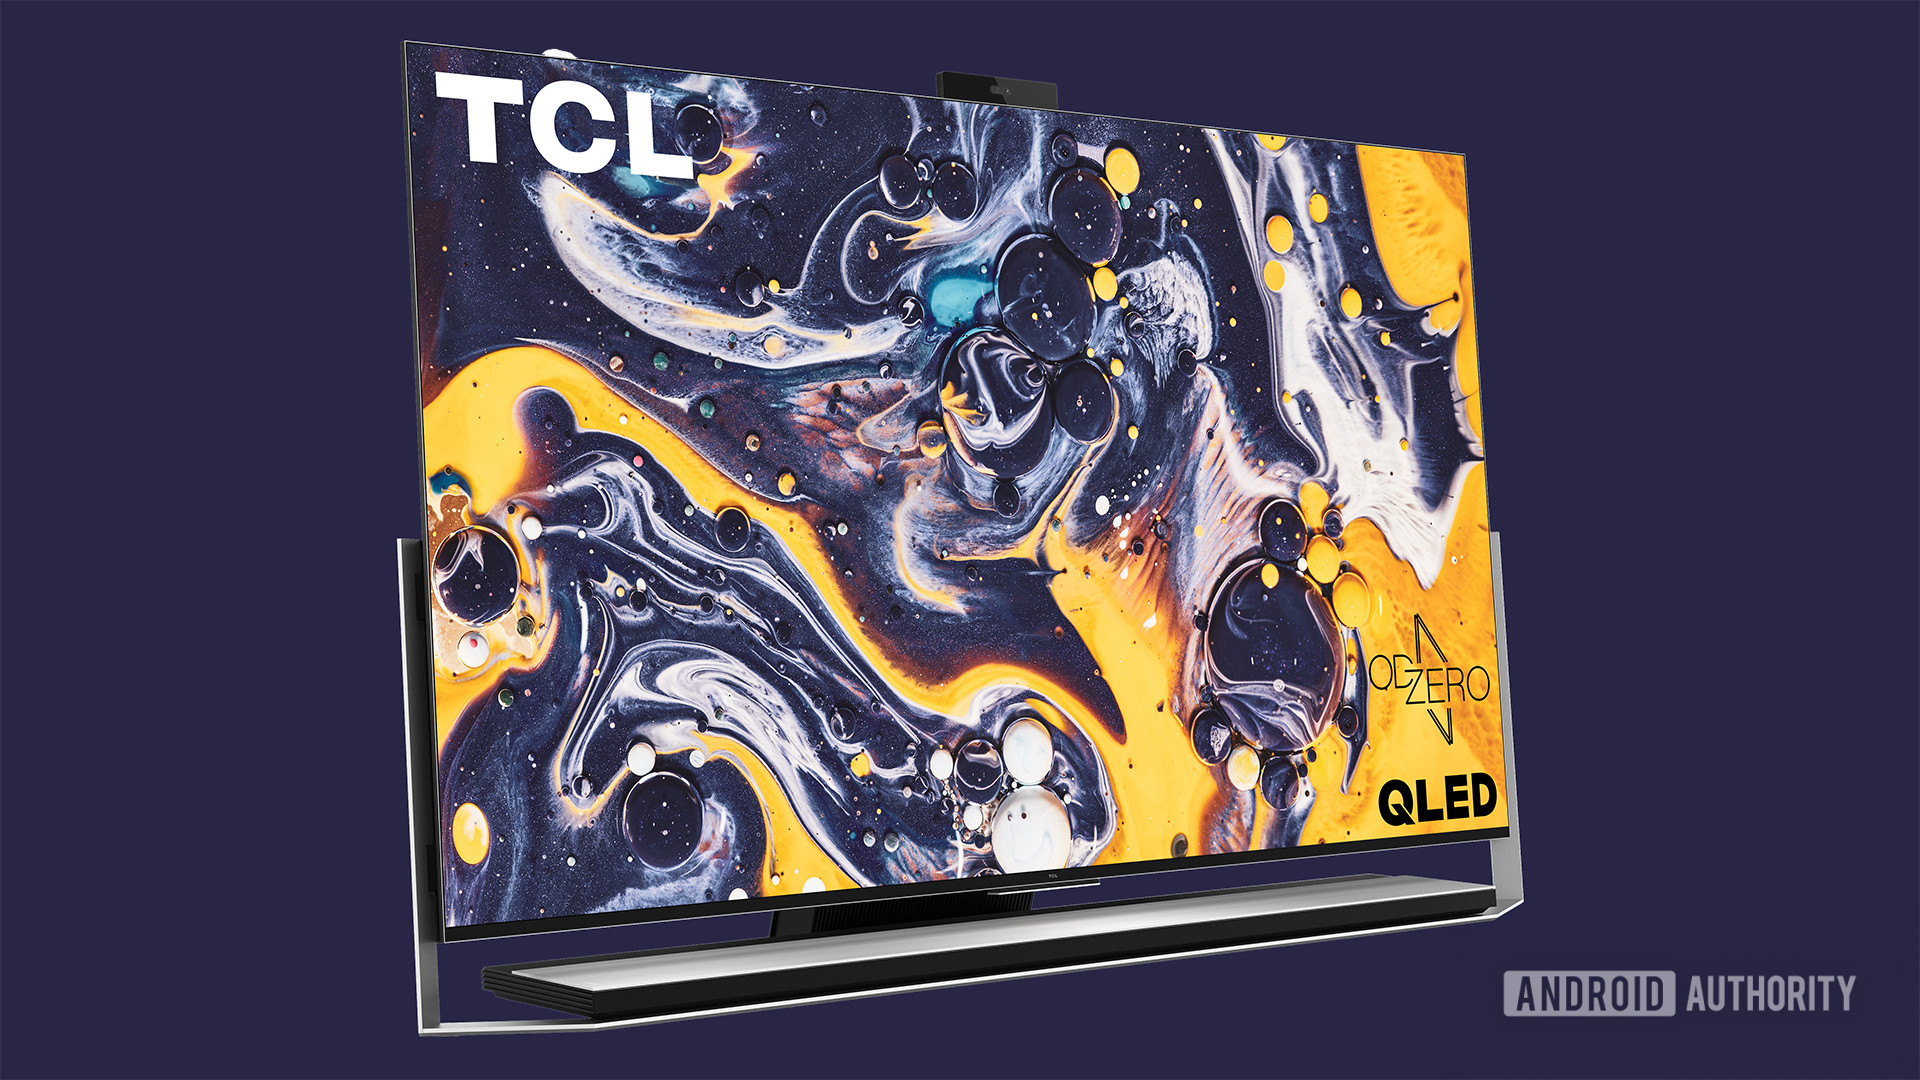 TCL TV X925 Pro